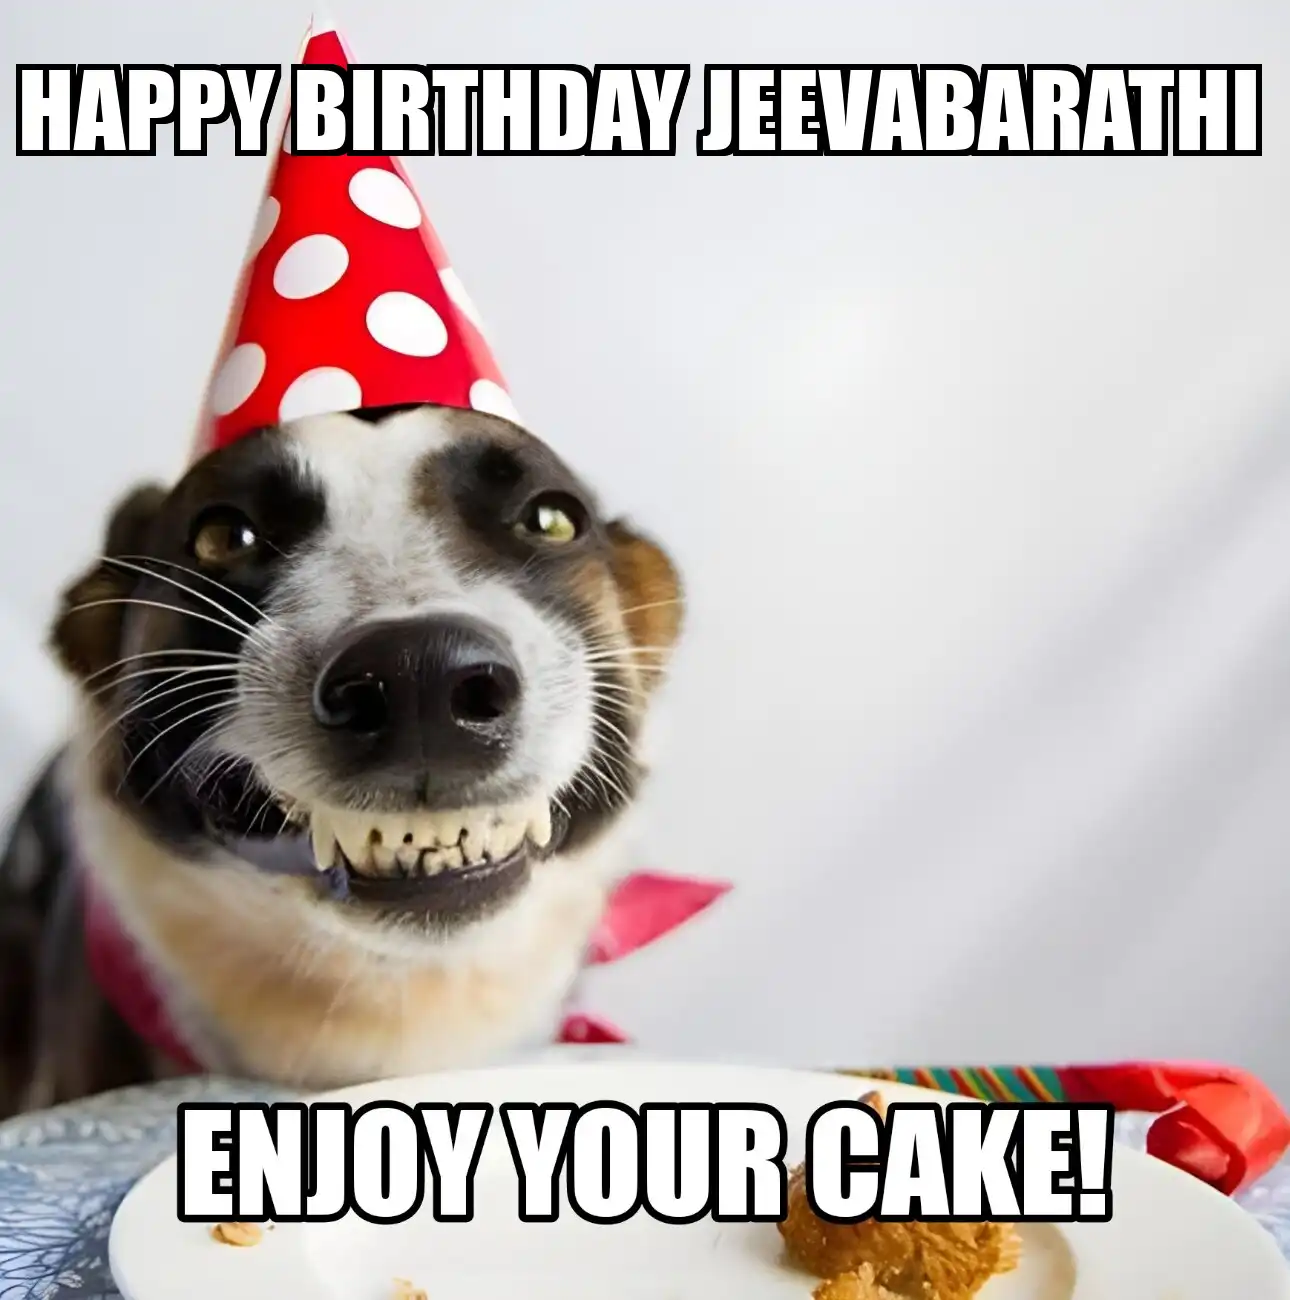 Happy Birthday Jeevabarathi Enjoy Your Cake Dog Meme